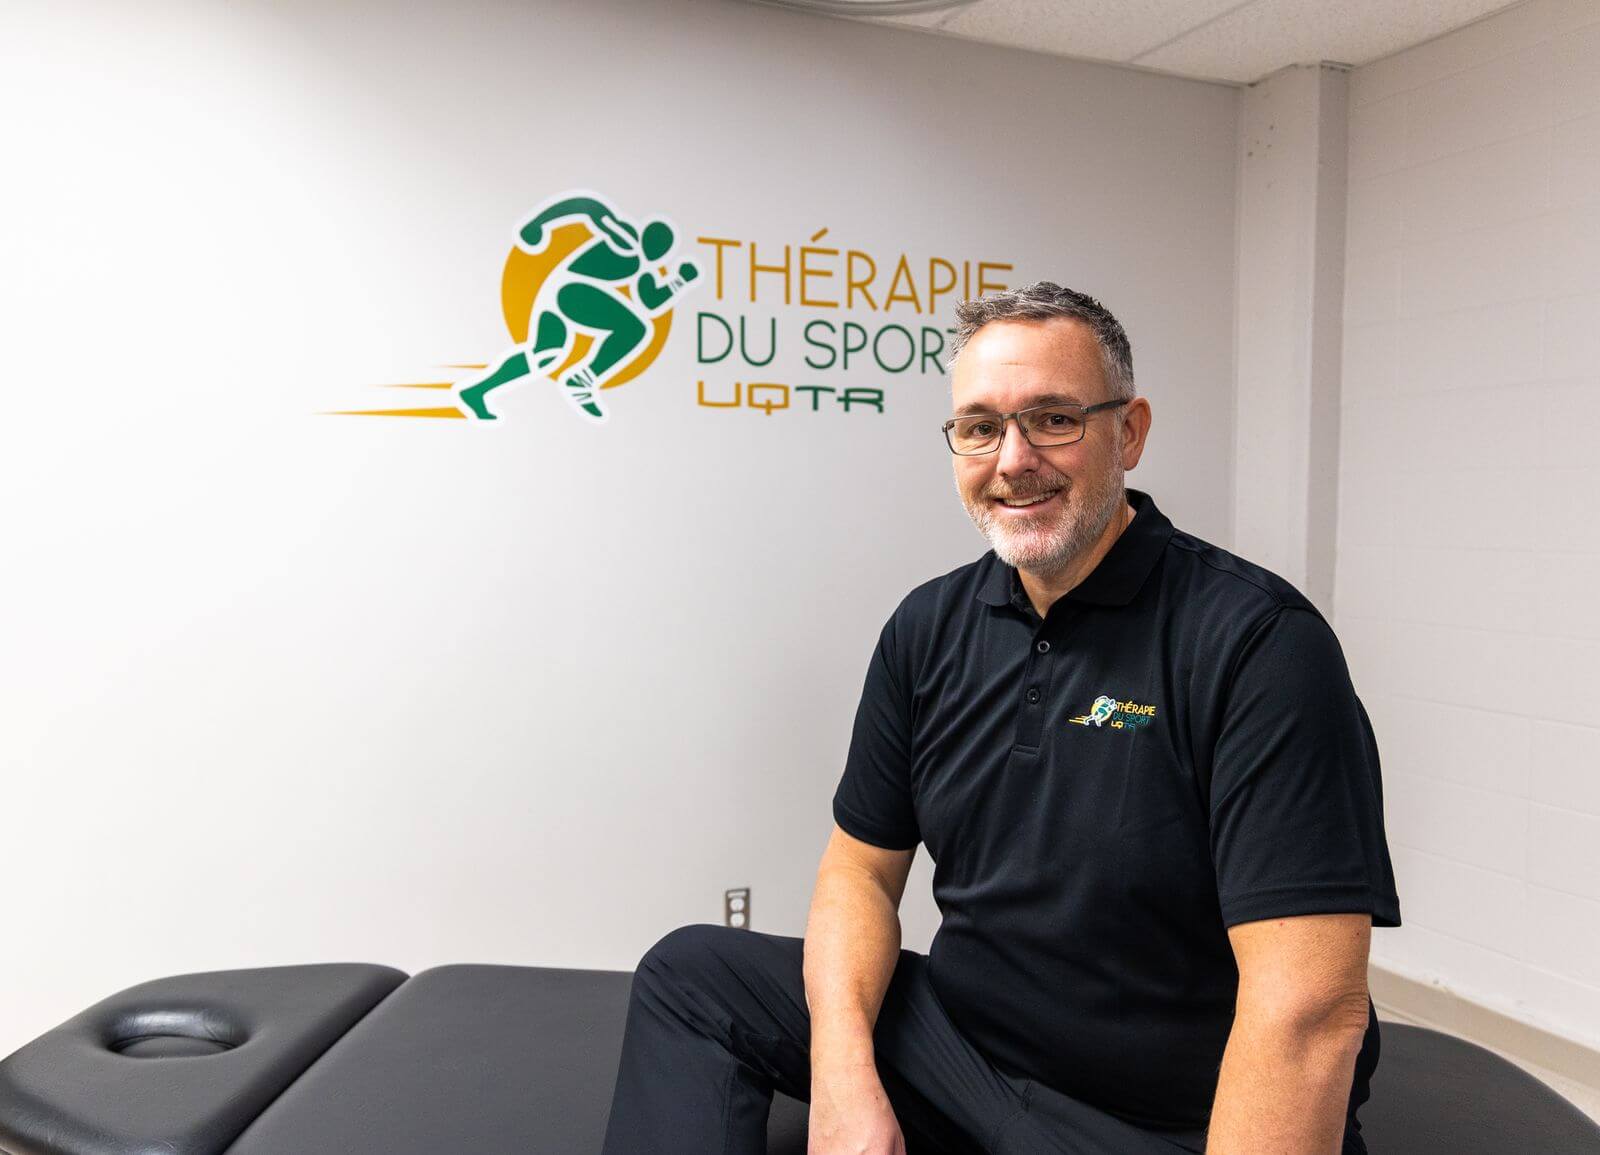 Le renommé thérapeute du sport Steve Bélanger se joint à l’équipe de l’UQTR